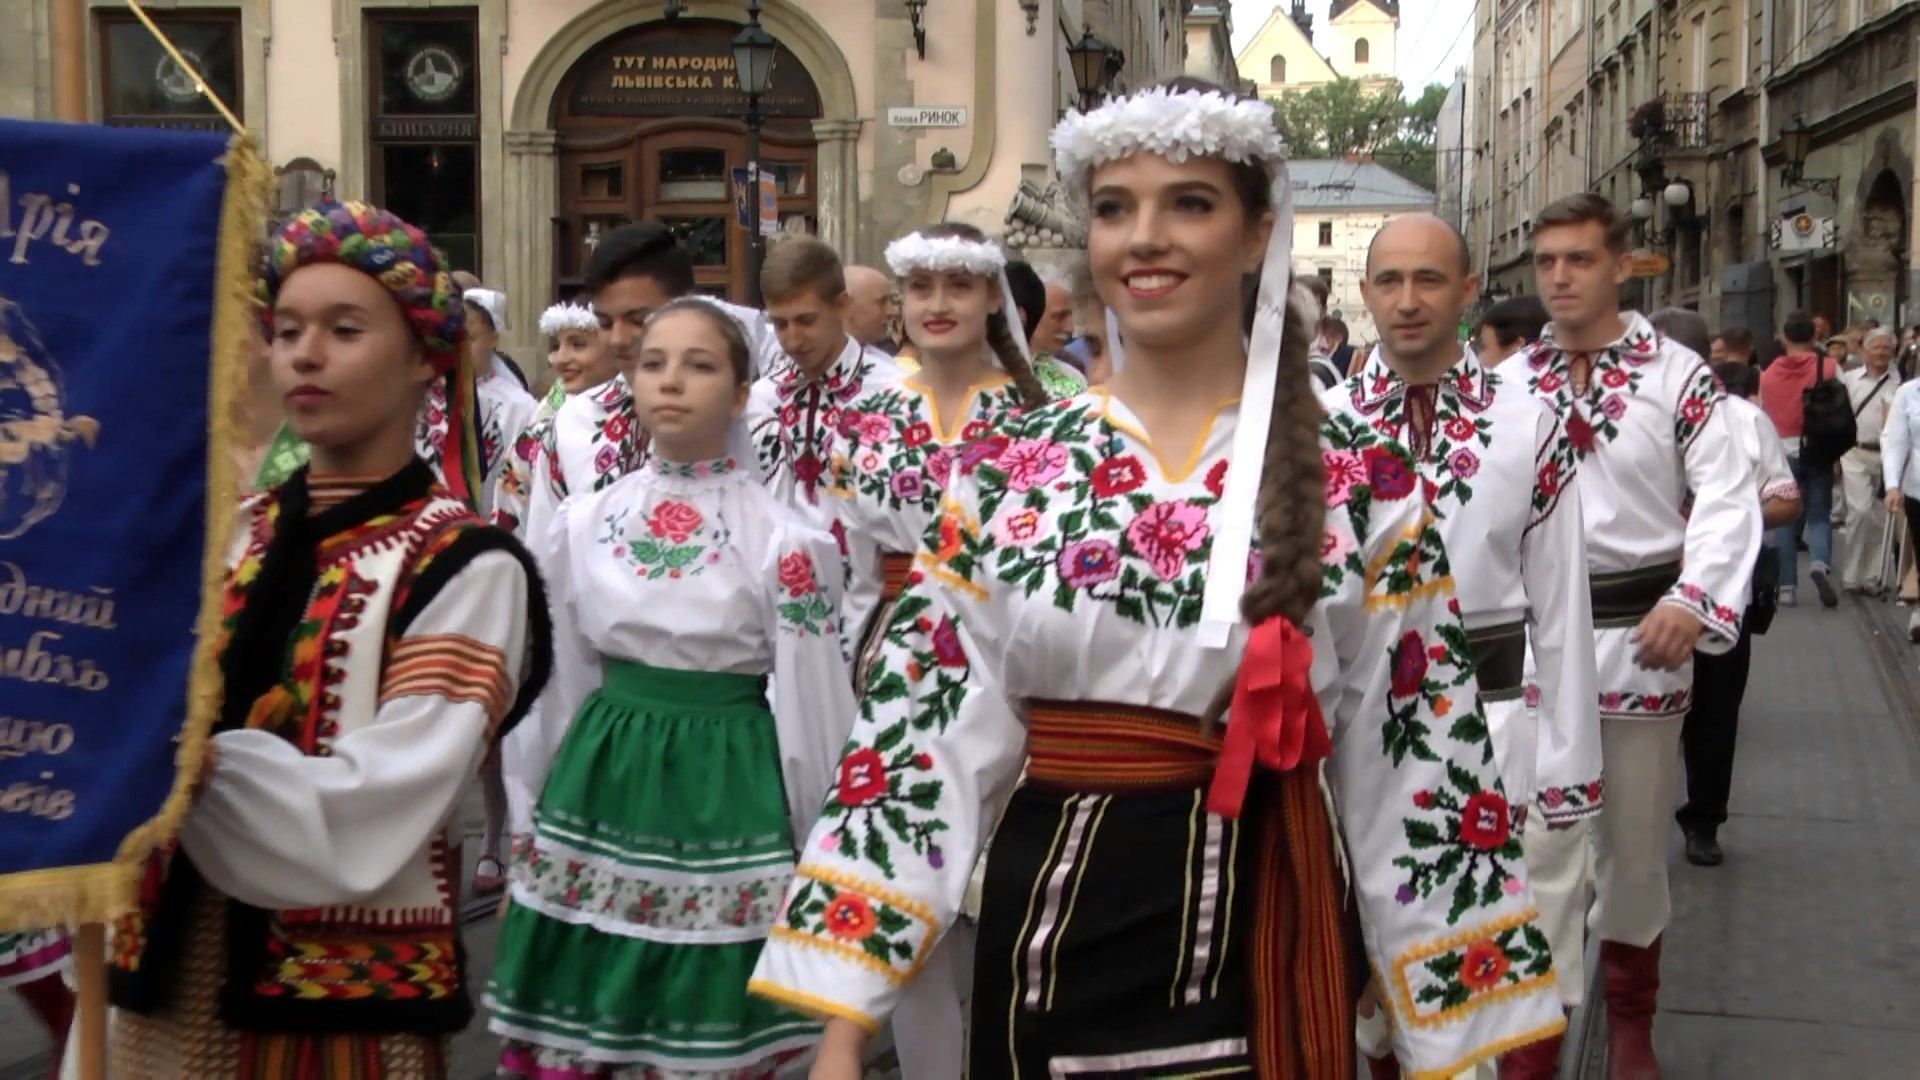 Представители культур мира собрались во Львове: колоритные фото с фестиваля "Этновир"